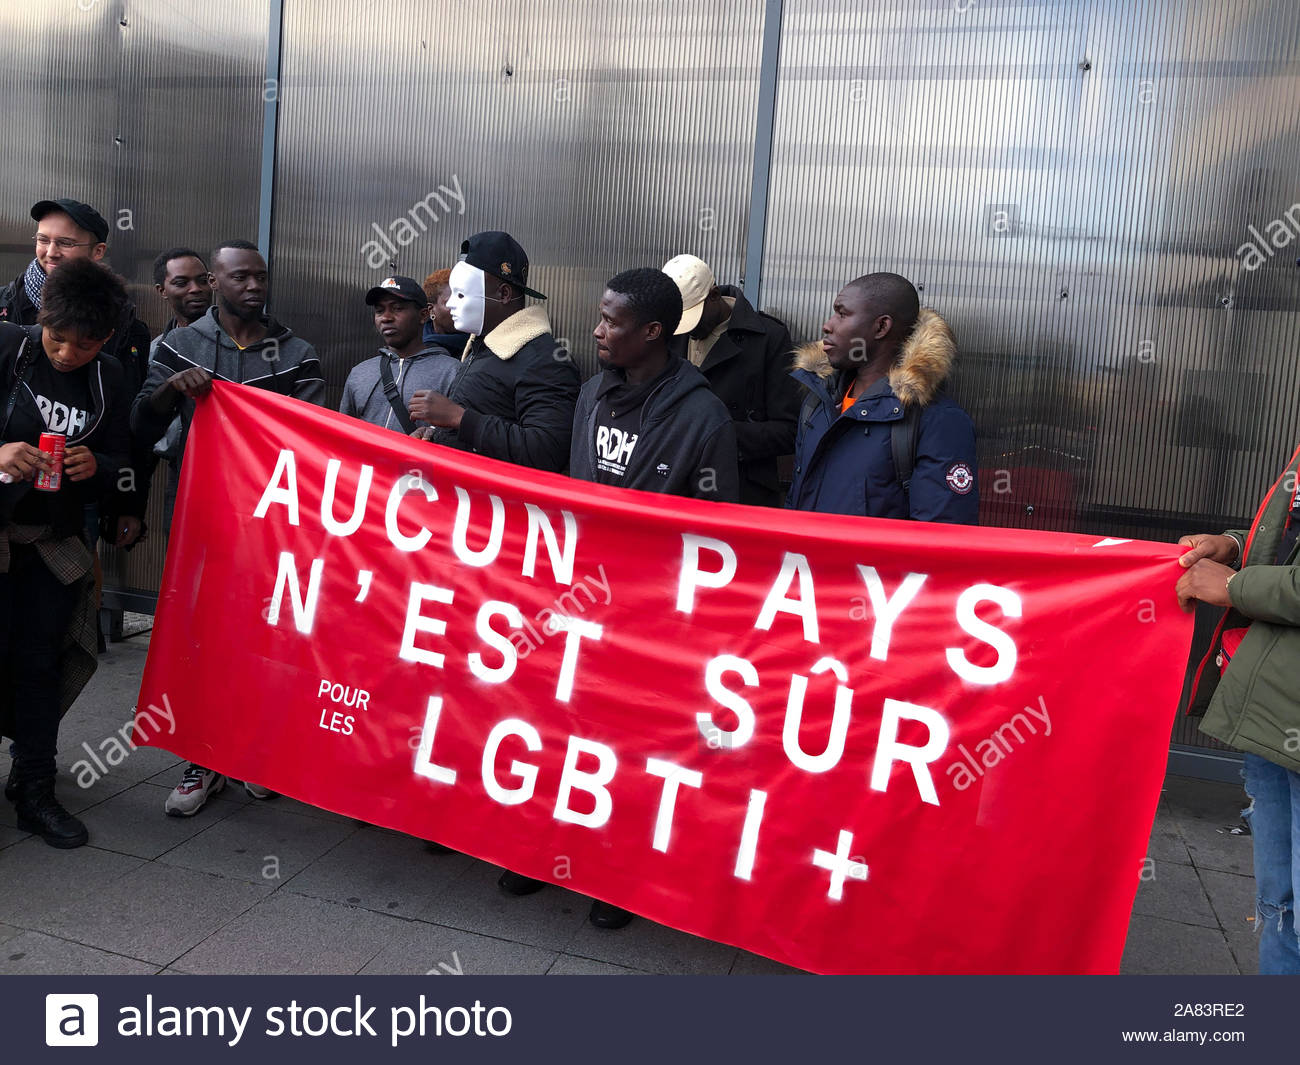 Protection des Lgbt/Ofpra: Le Conseil d’Etat français retire le Sénégal de la controversée liste des pays « sûrs»